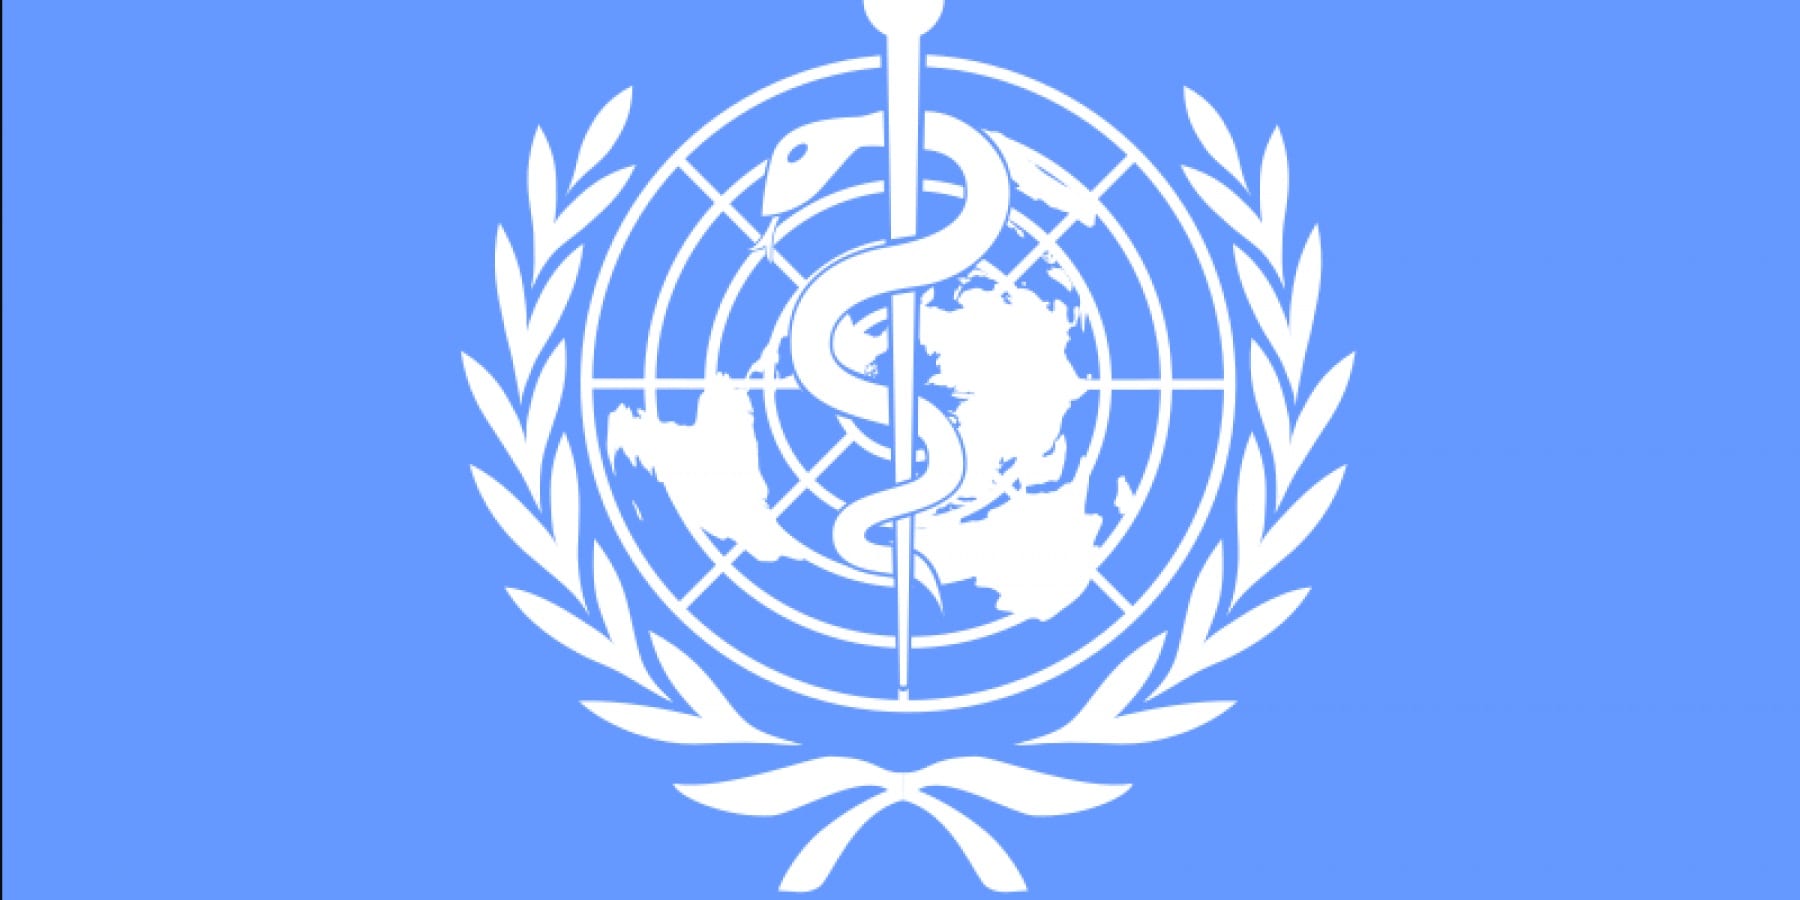 منظمة الصحة العالمية. تنفي إصدار توقعات فيروس كورونا بالمغرب